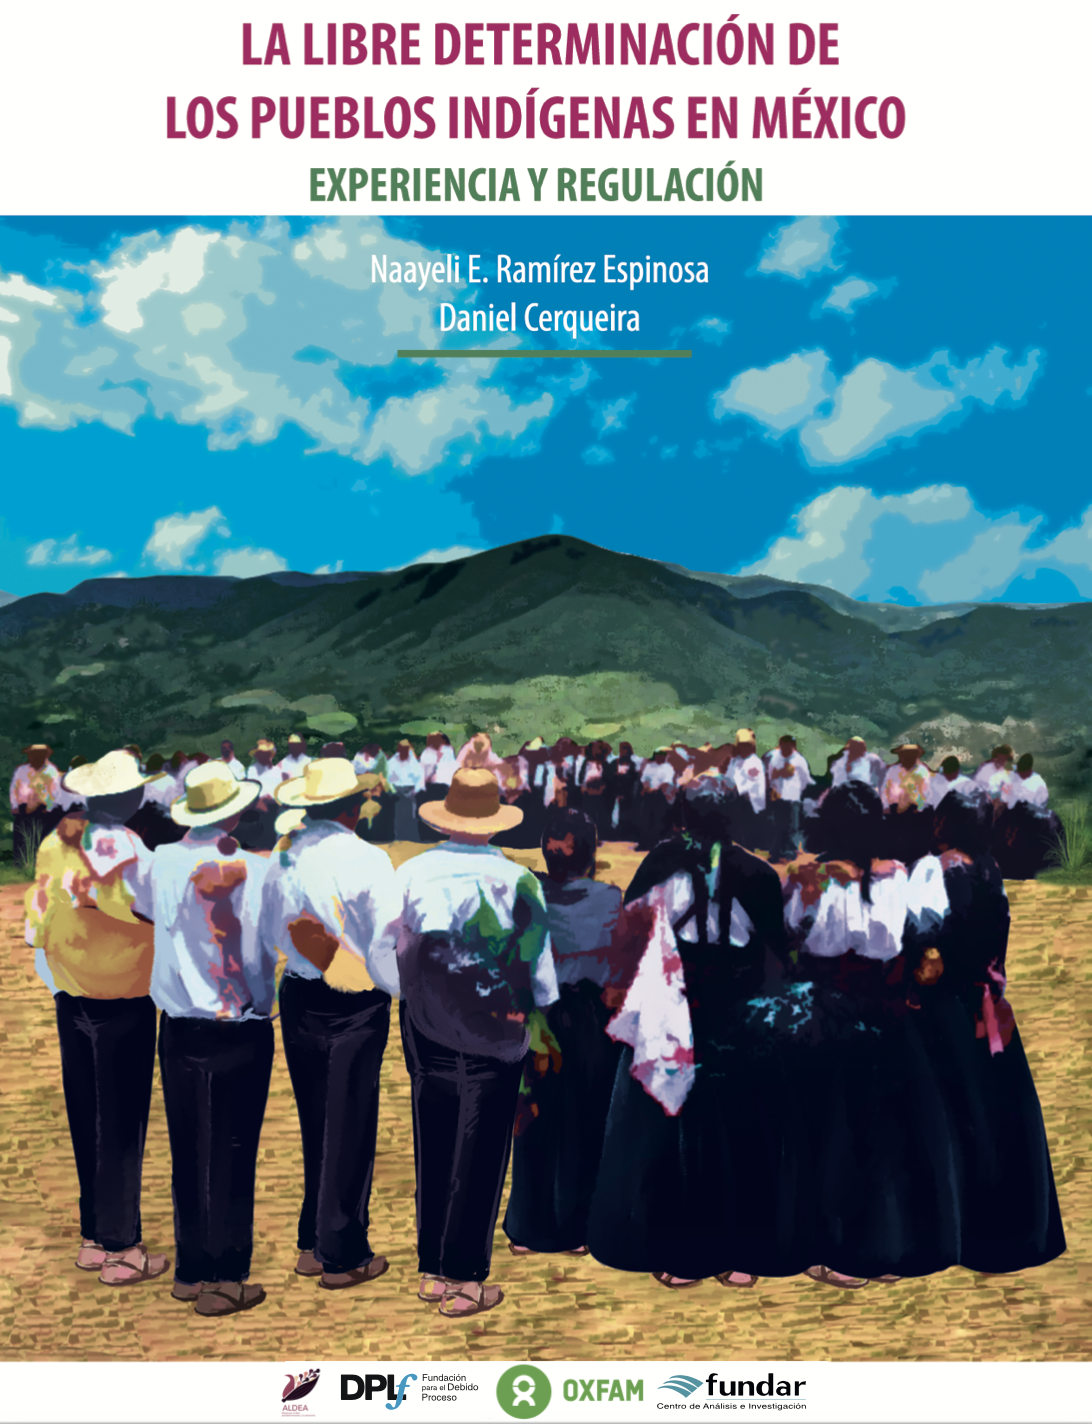 La libre determinación de los pueblos indígenas en México: experiencias y regulación (Alianza por la Libre Determinación y la Autonomía)